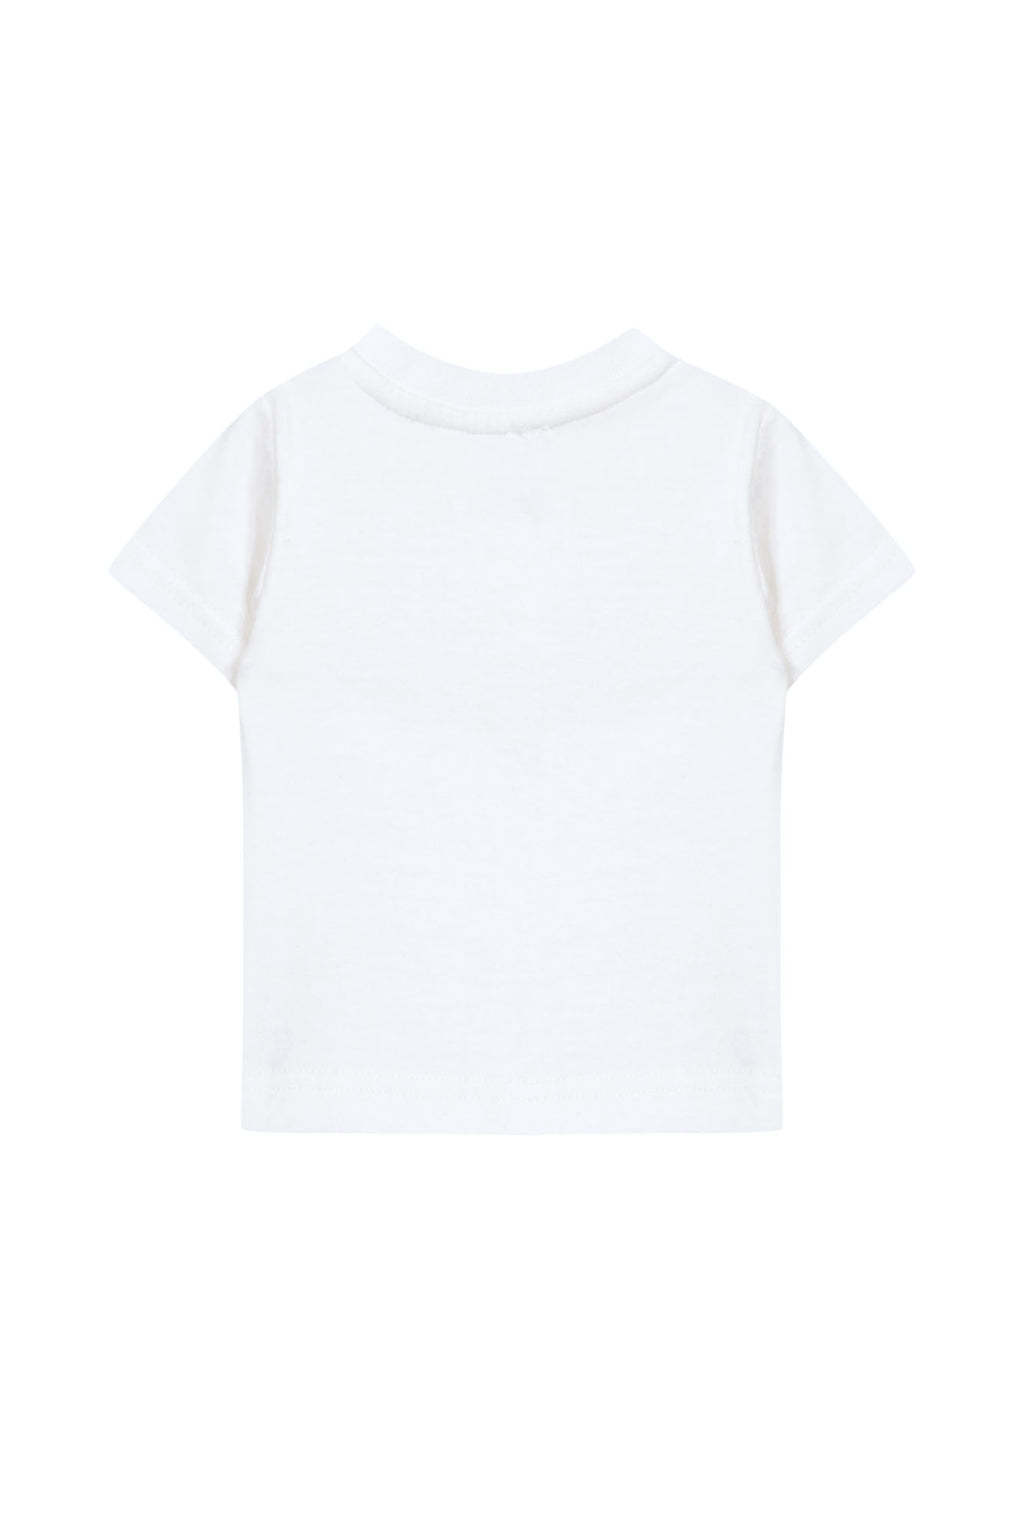 Camiseta - Blanco Ilustración coala